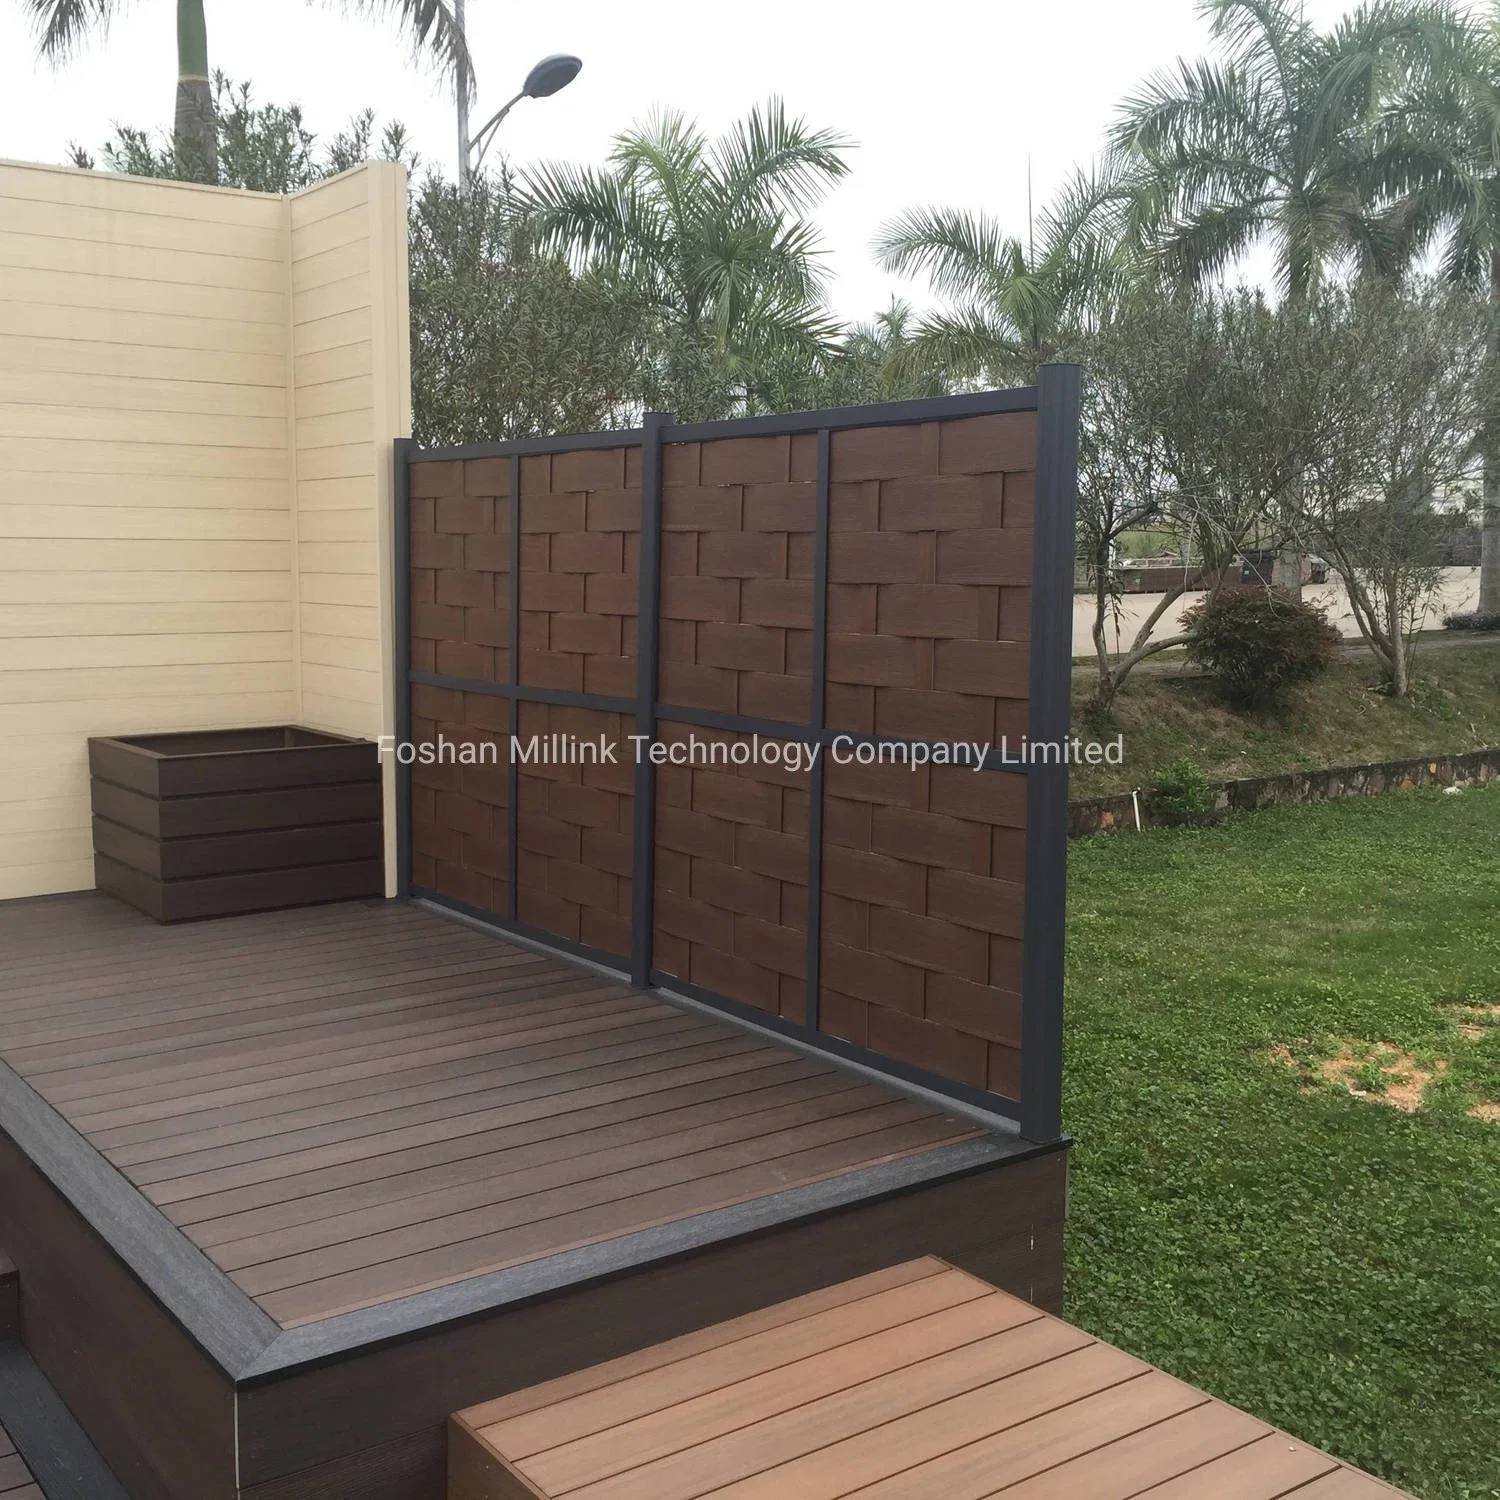 Nouveau design WPC Vinyle Plancher en plastique en bois Stratifié Carrelage de terrasse